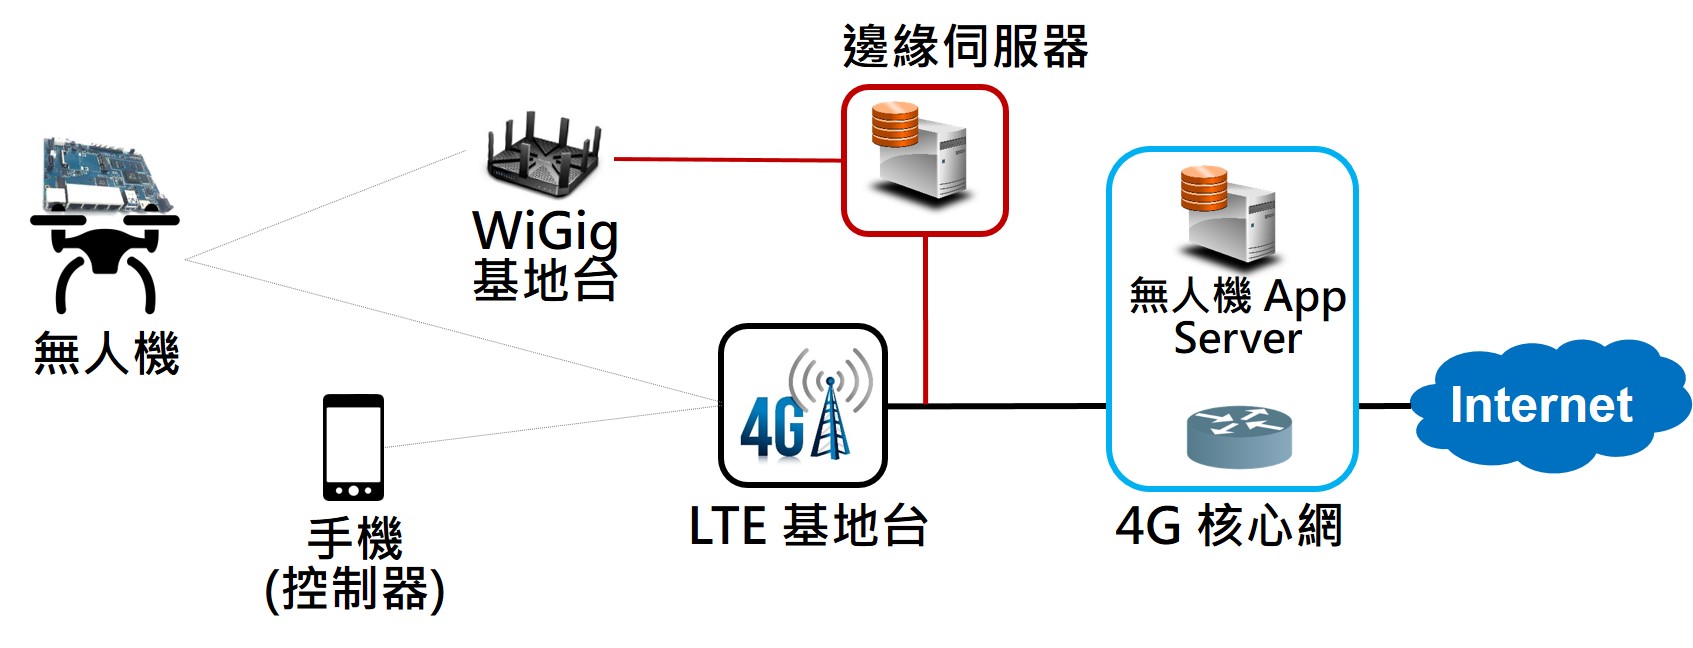 搭載LTE網路遠程控制和WiGig超高速通訊之無人機平台